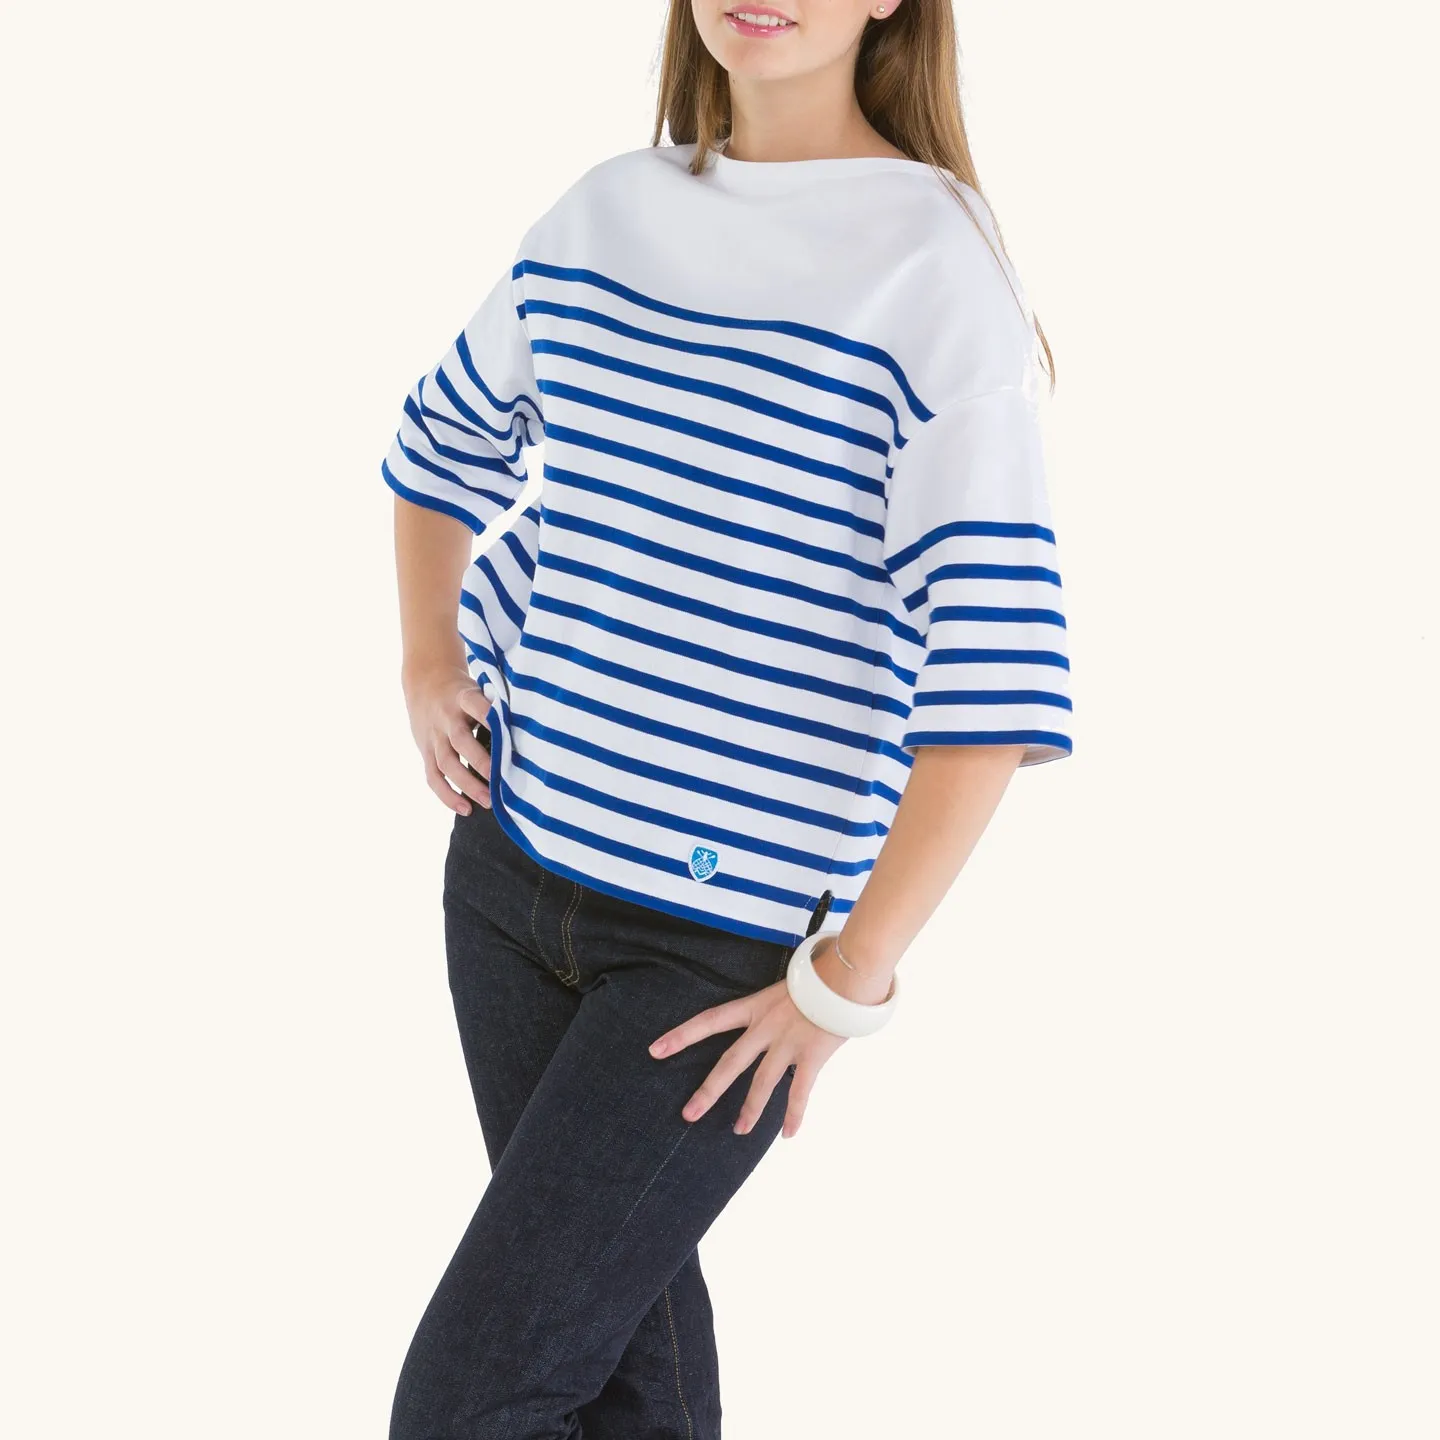 Drop-Shoulders Women's Striped shirt White / Blue Orcival